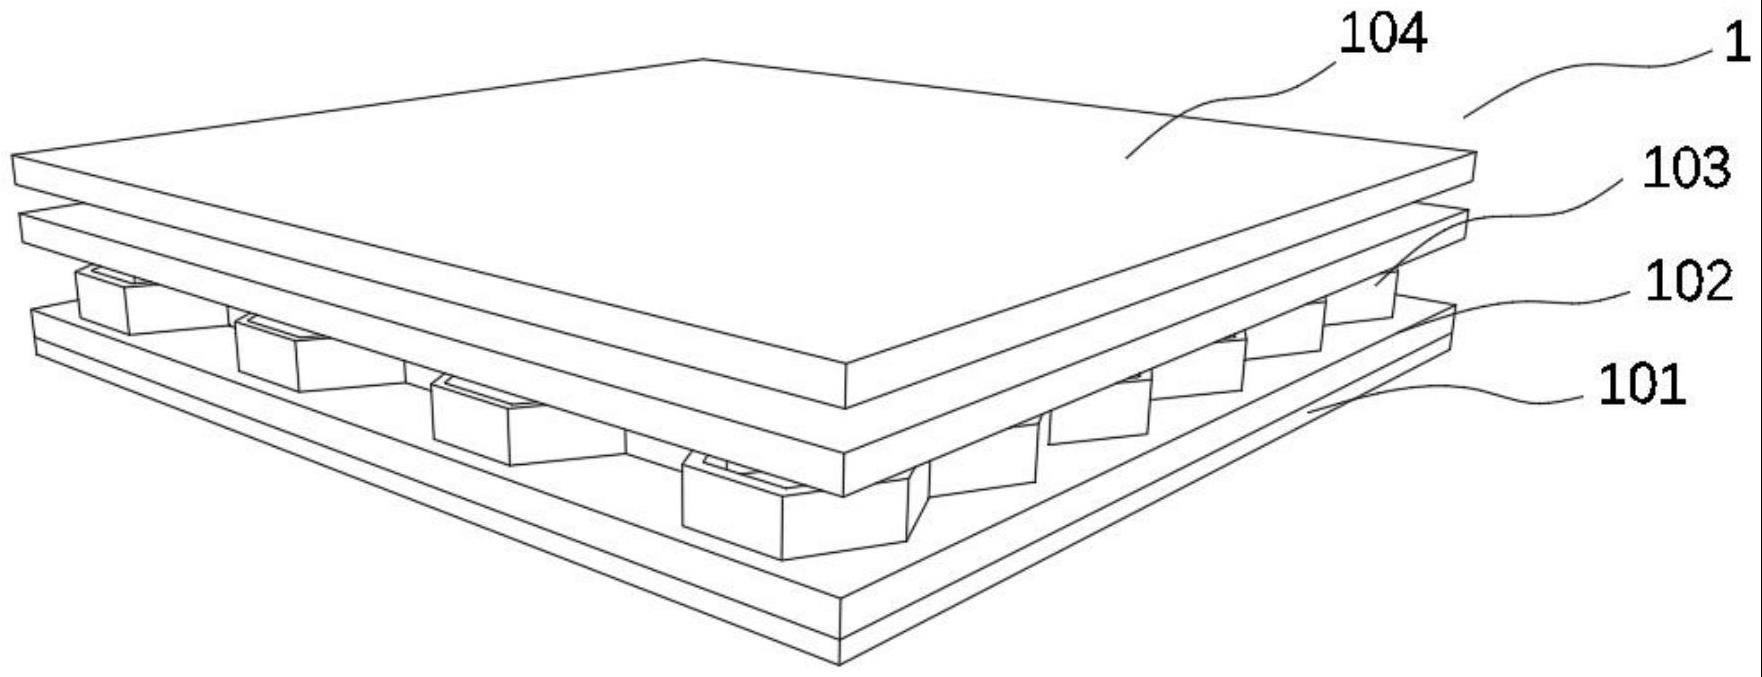 膜板蜂窝型吸声板的制作方法